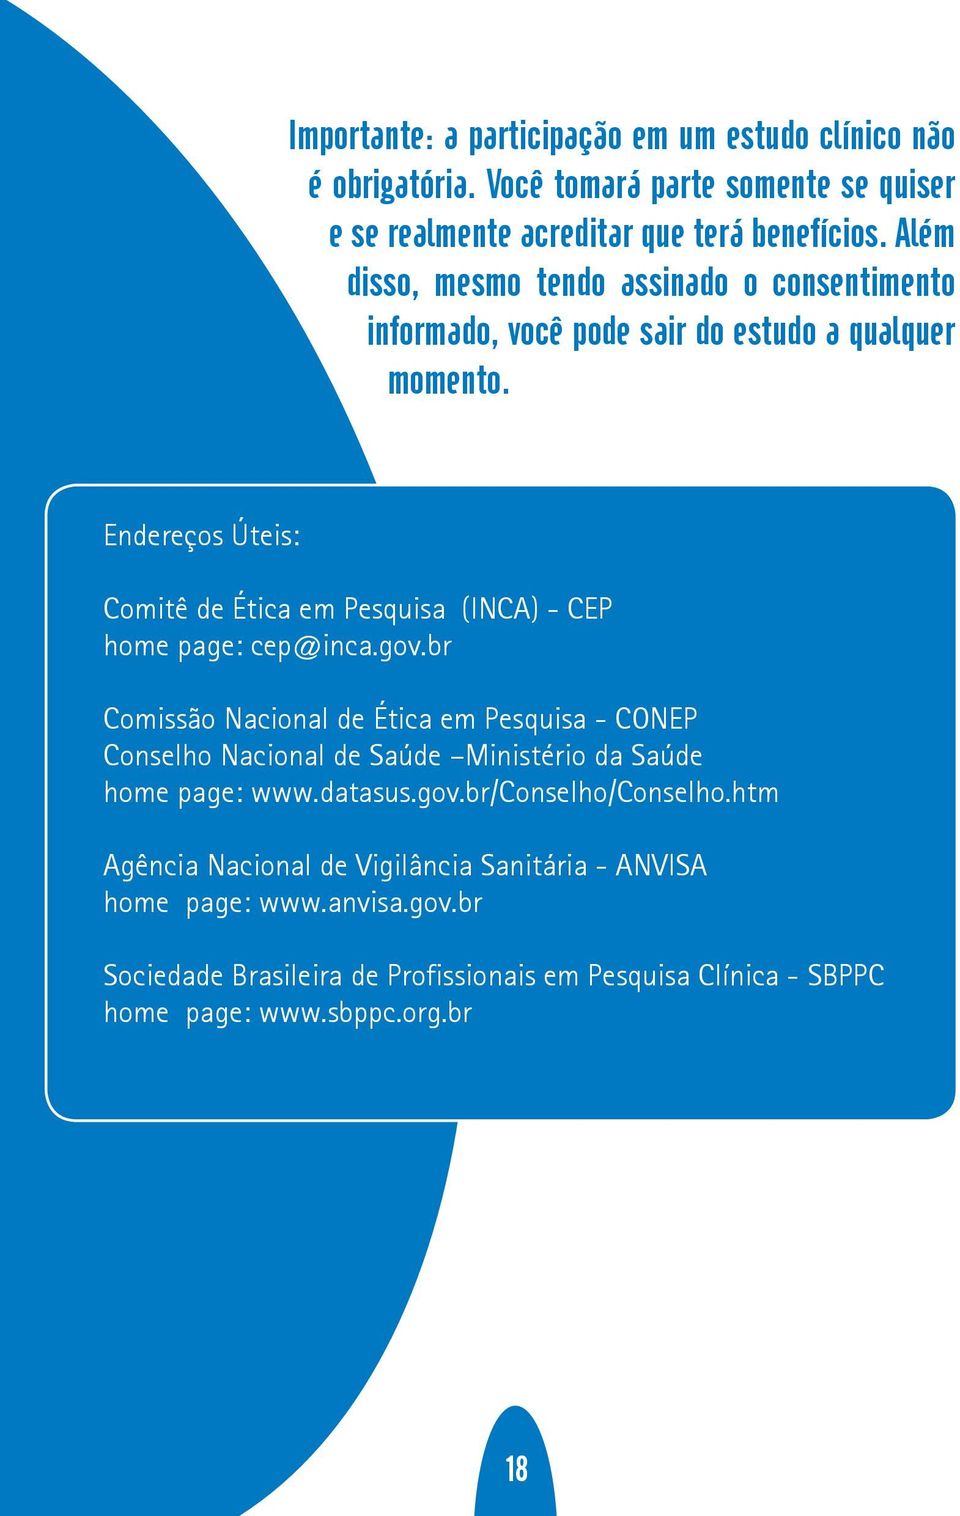 Endereços Úteis: Comitê de Ética em Pesquisa (INCA) - CEP home page: cep@inca.gov.